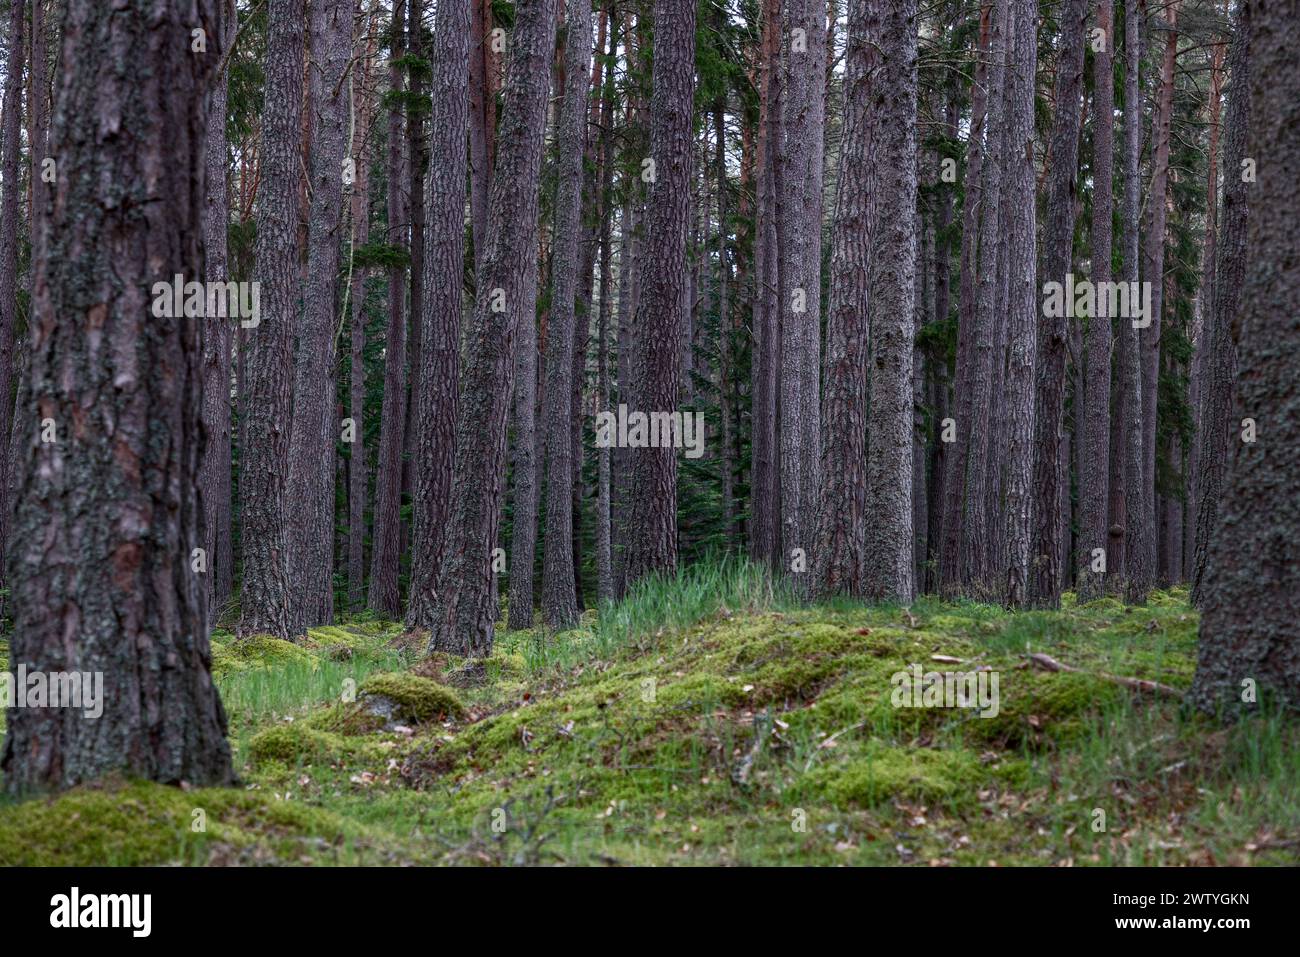 La profonda tranquillità della pineta è catturata in questa immagine, dove l'uniformità degli alti alberi e la lussureggiante terra muschiata trasmettono un senso di danno Foto Stock